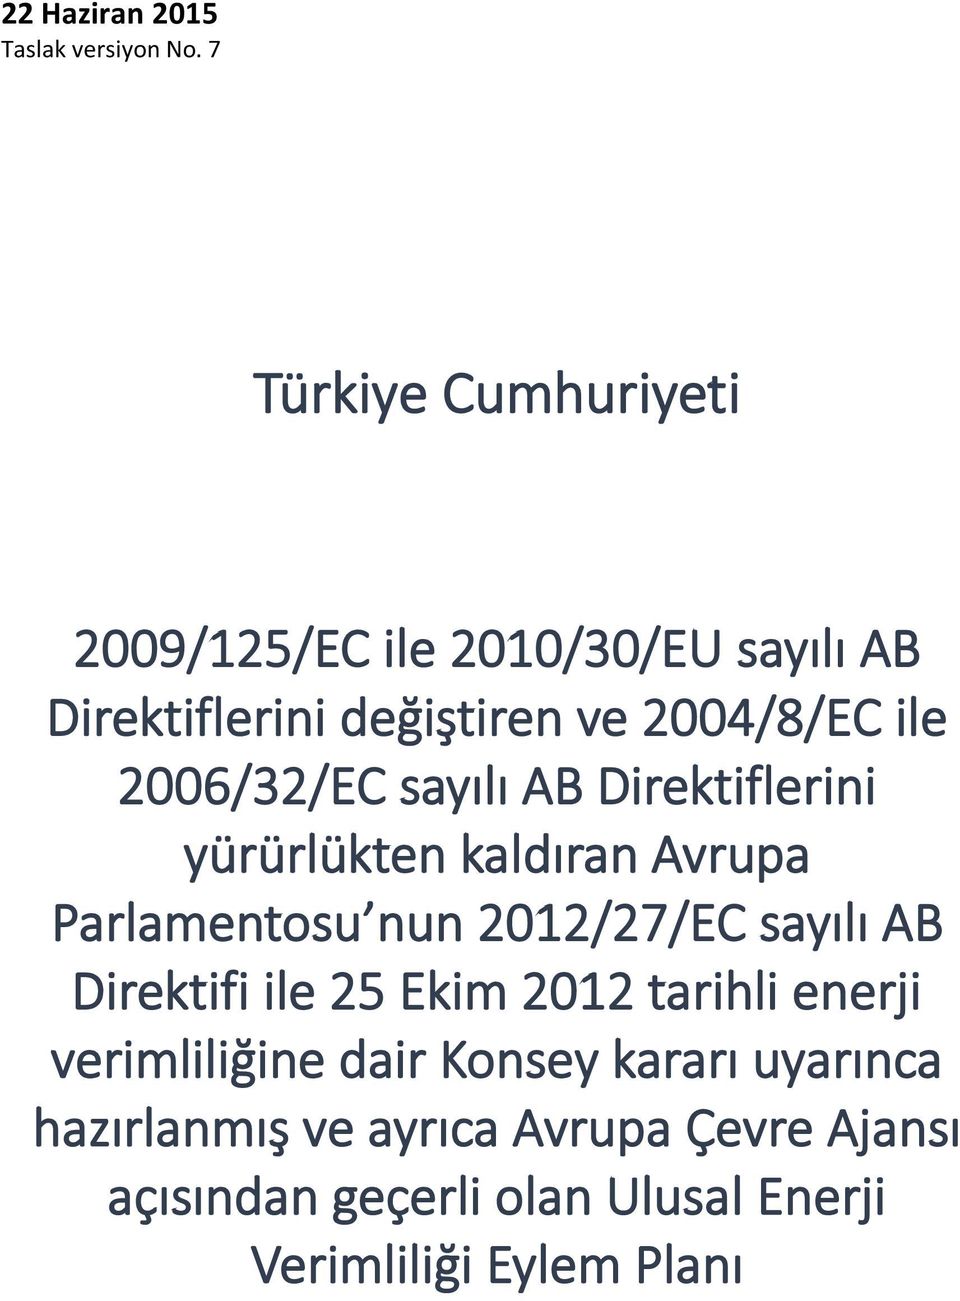 2006/32/EC sayılı AB Direktiflerini yürürlükten kaldıran Avrupa Parlamentosu nun 2012/27/EC sayılı AB